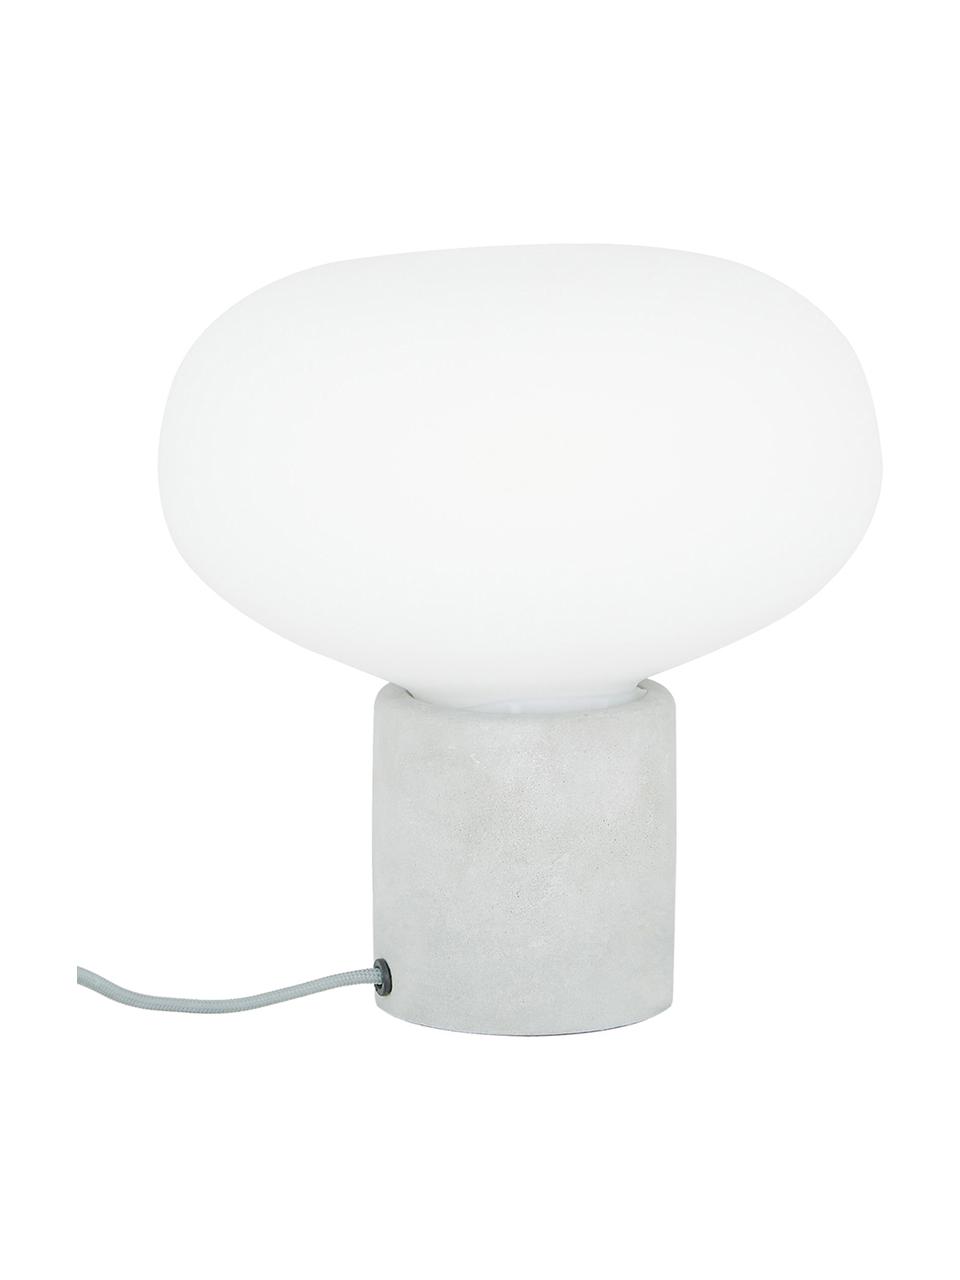 Lámpara de mesa pequeña de hormigón Alma, Pantalla: vidrio, Cable: cubierto en tela, Blanco, gris, Ø 23 x Al 24 cm